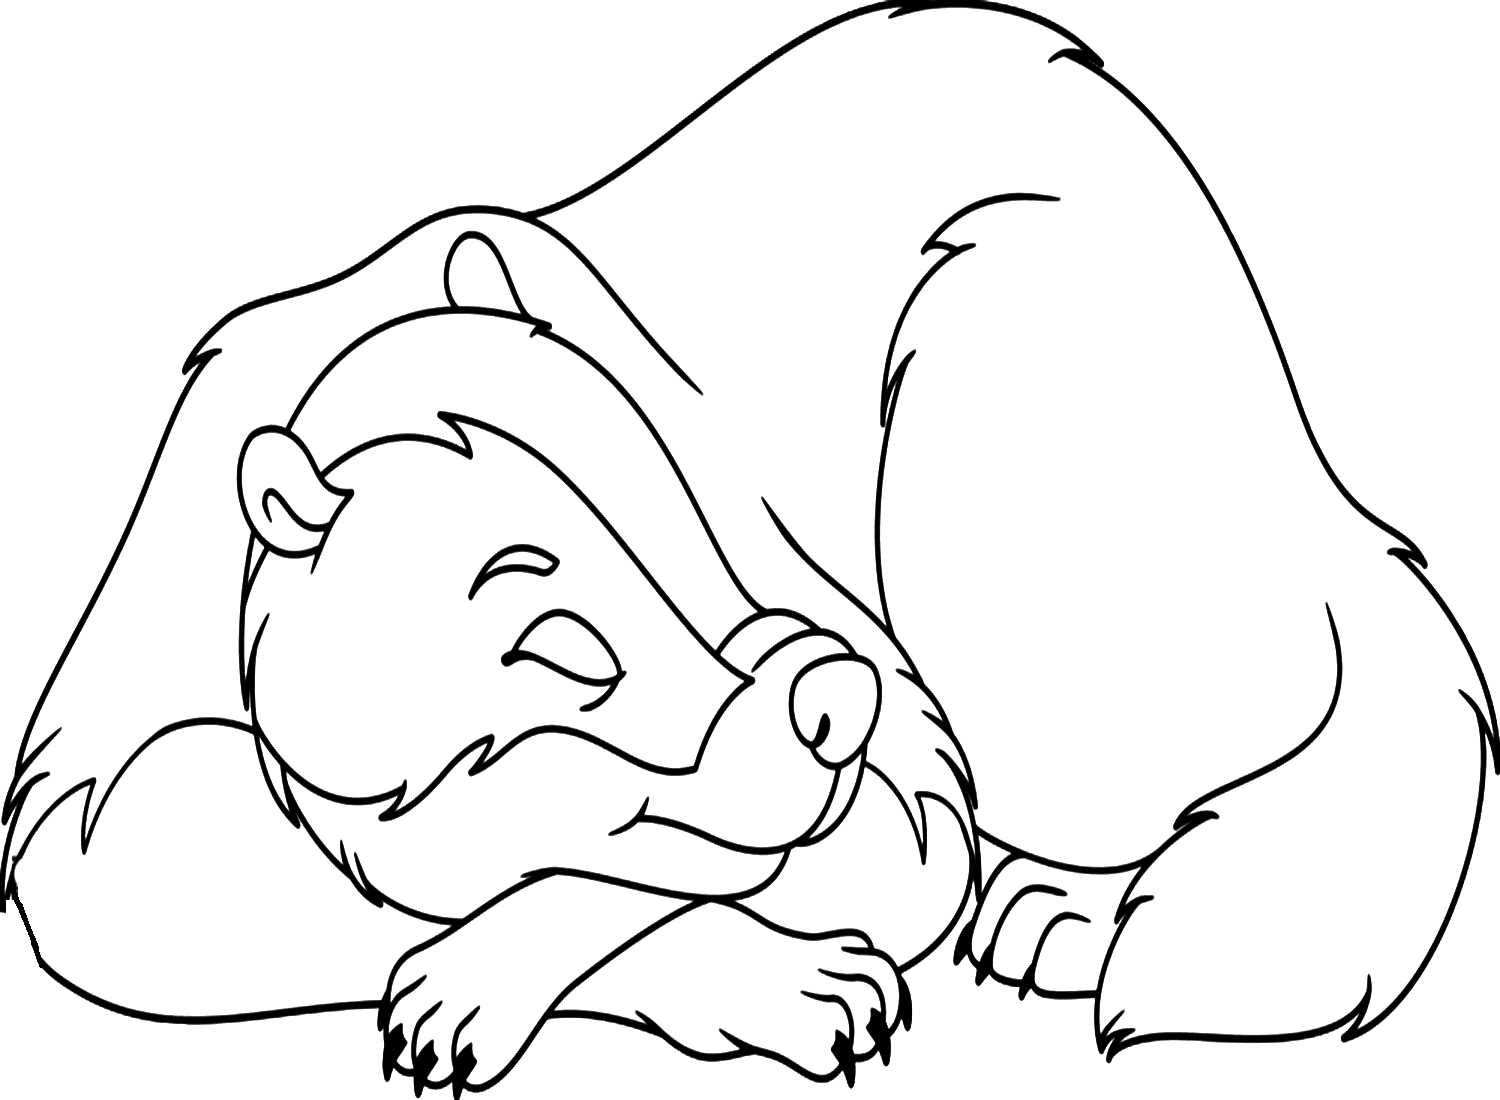 Раскраска Спящий барсук для детей от Badger